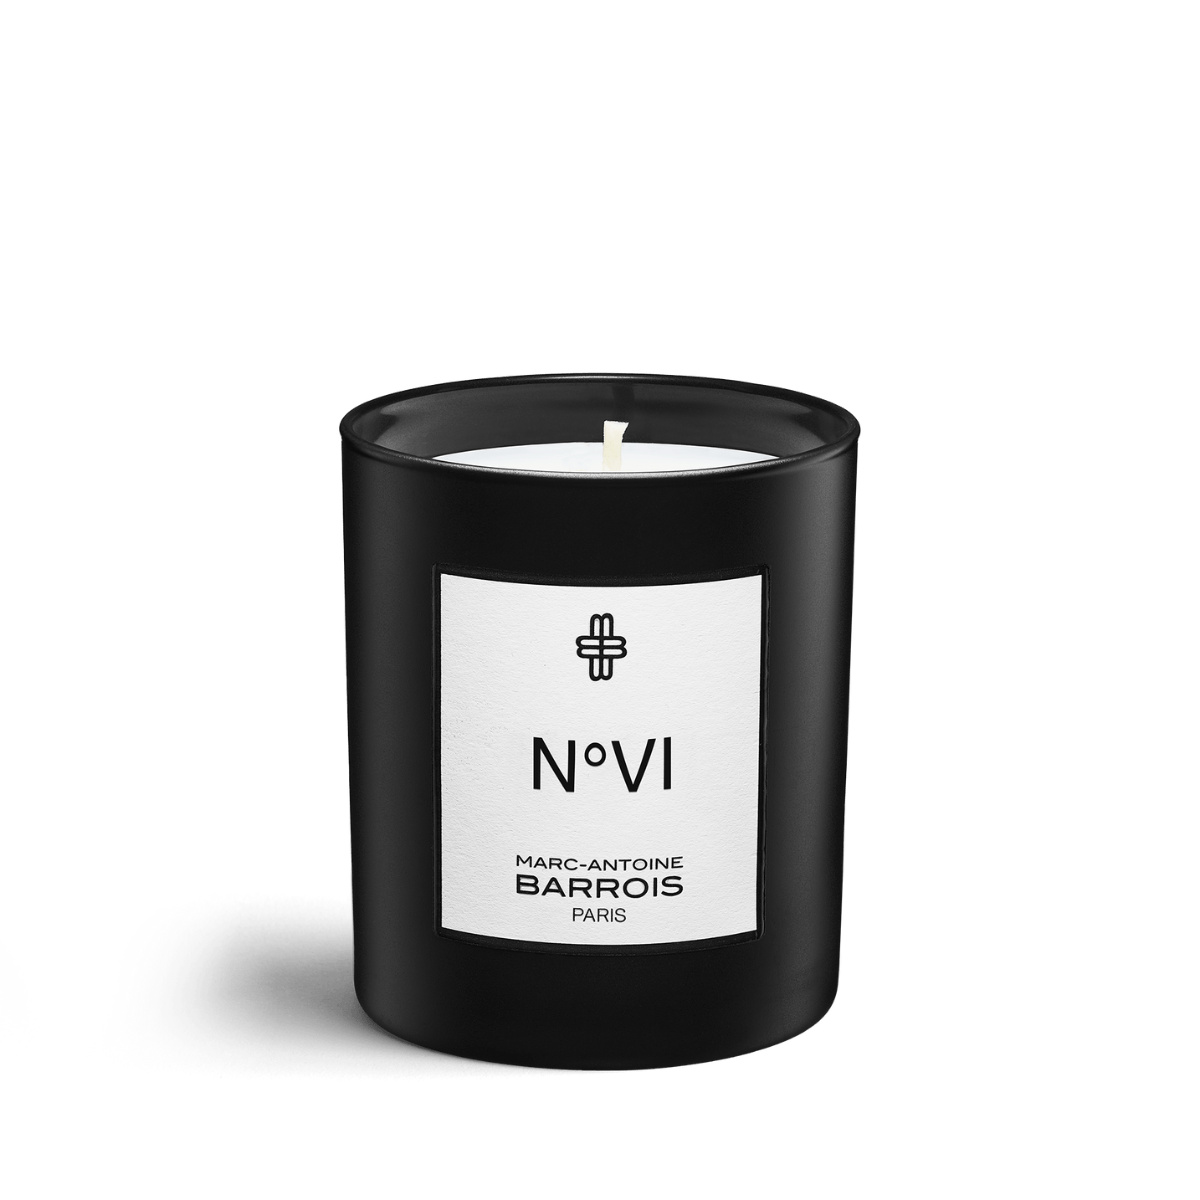 Afeelding van No6 scented candle 75 gram van het merk Marc-Antoine Barrois